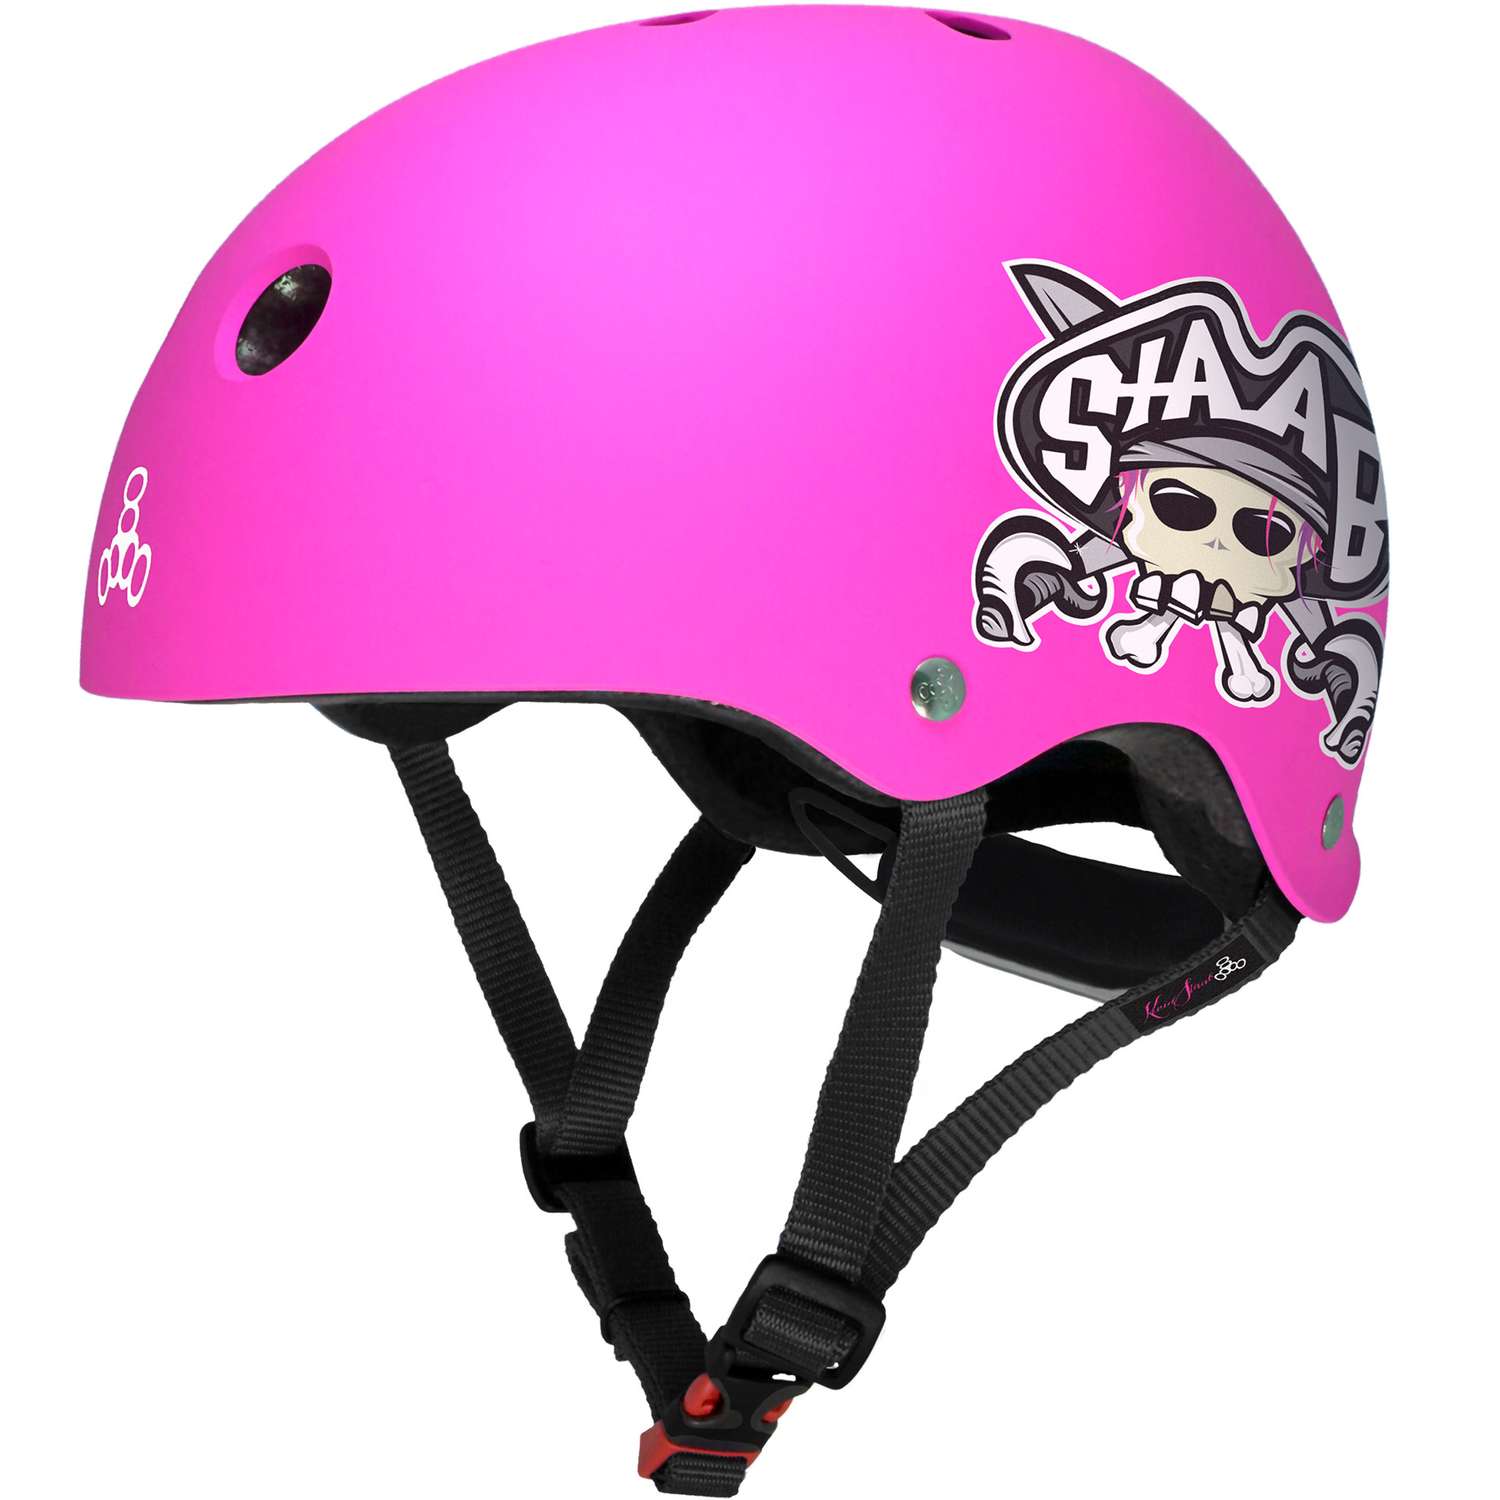 Шлем защитный спортивный Triple Eight Lil 8 Staab Neon Pink (розовый) / размер М 5+ / регулировка размера 46-52 см. / для детей - фото 1